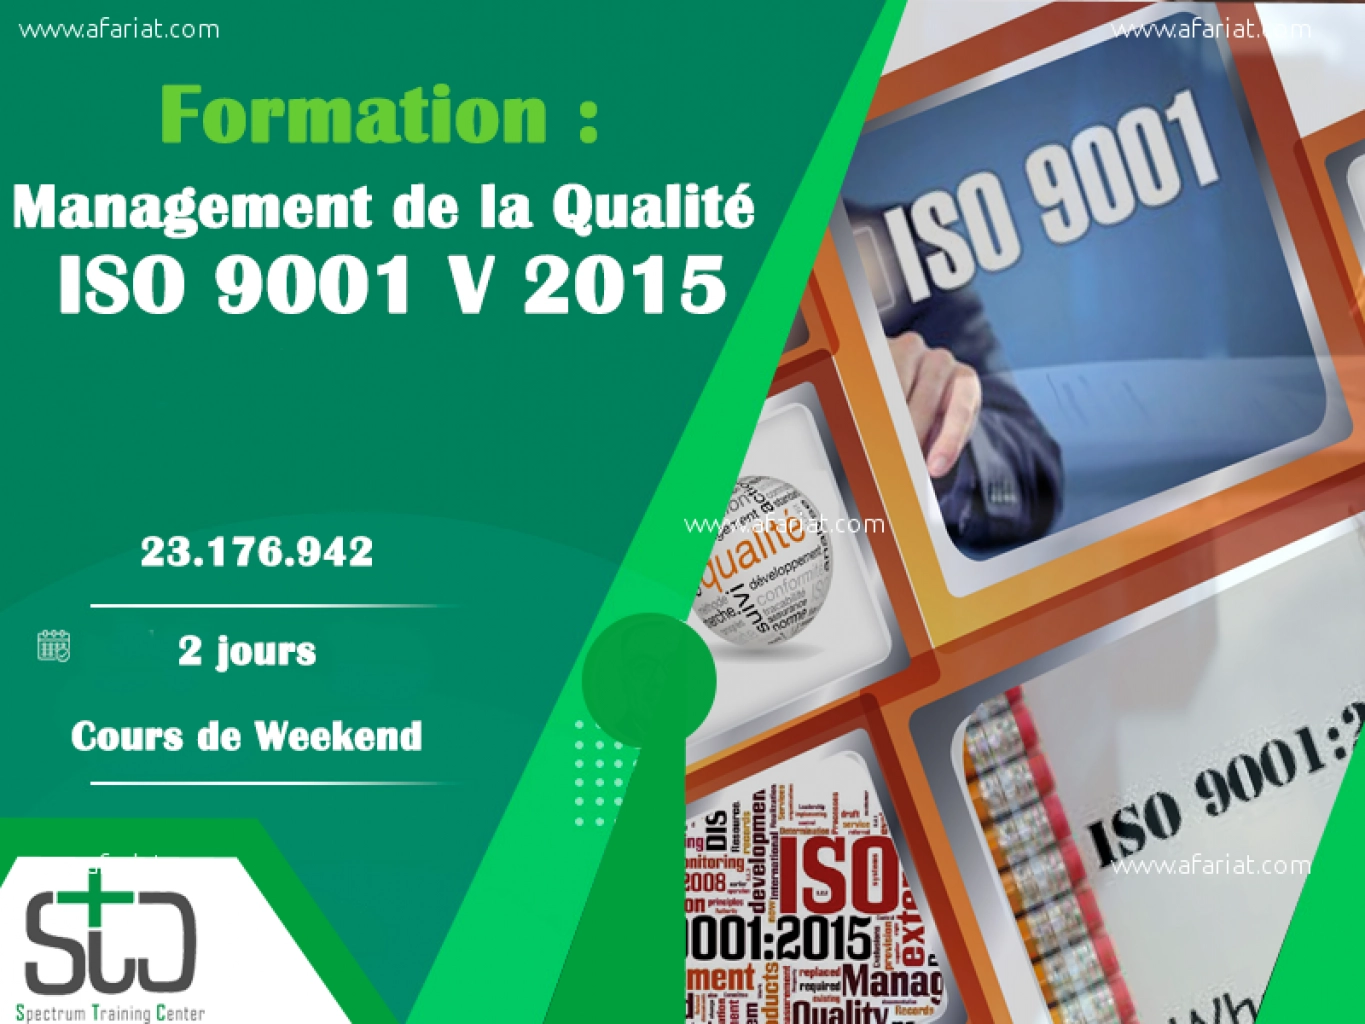 management de la qualité ISO 9001 version 2015.